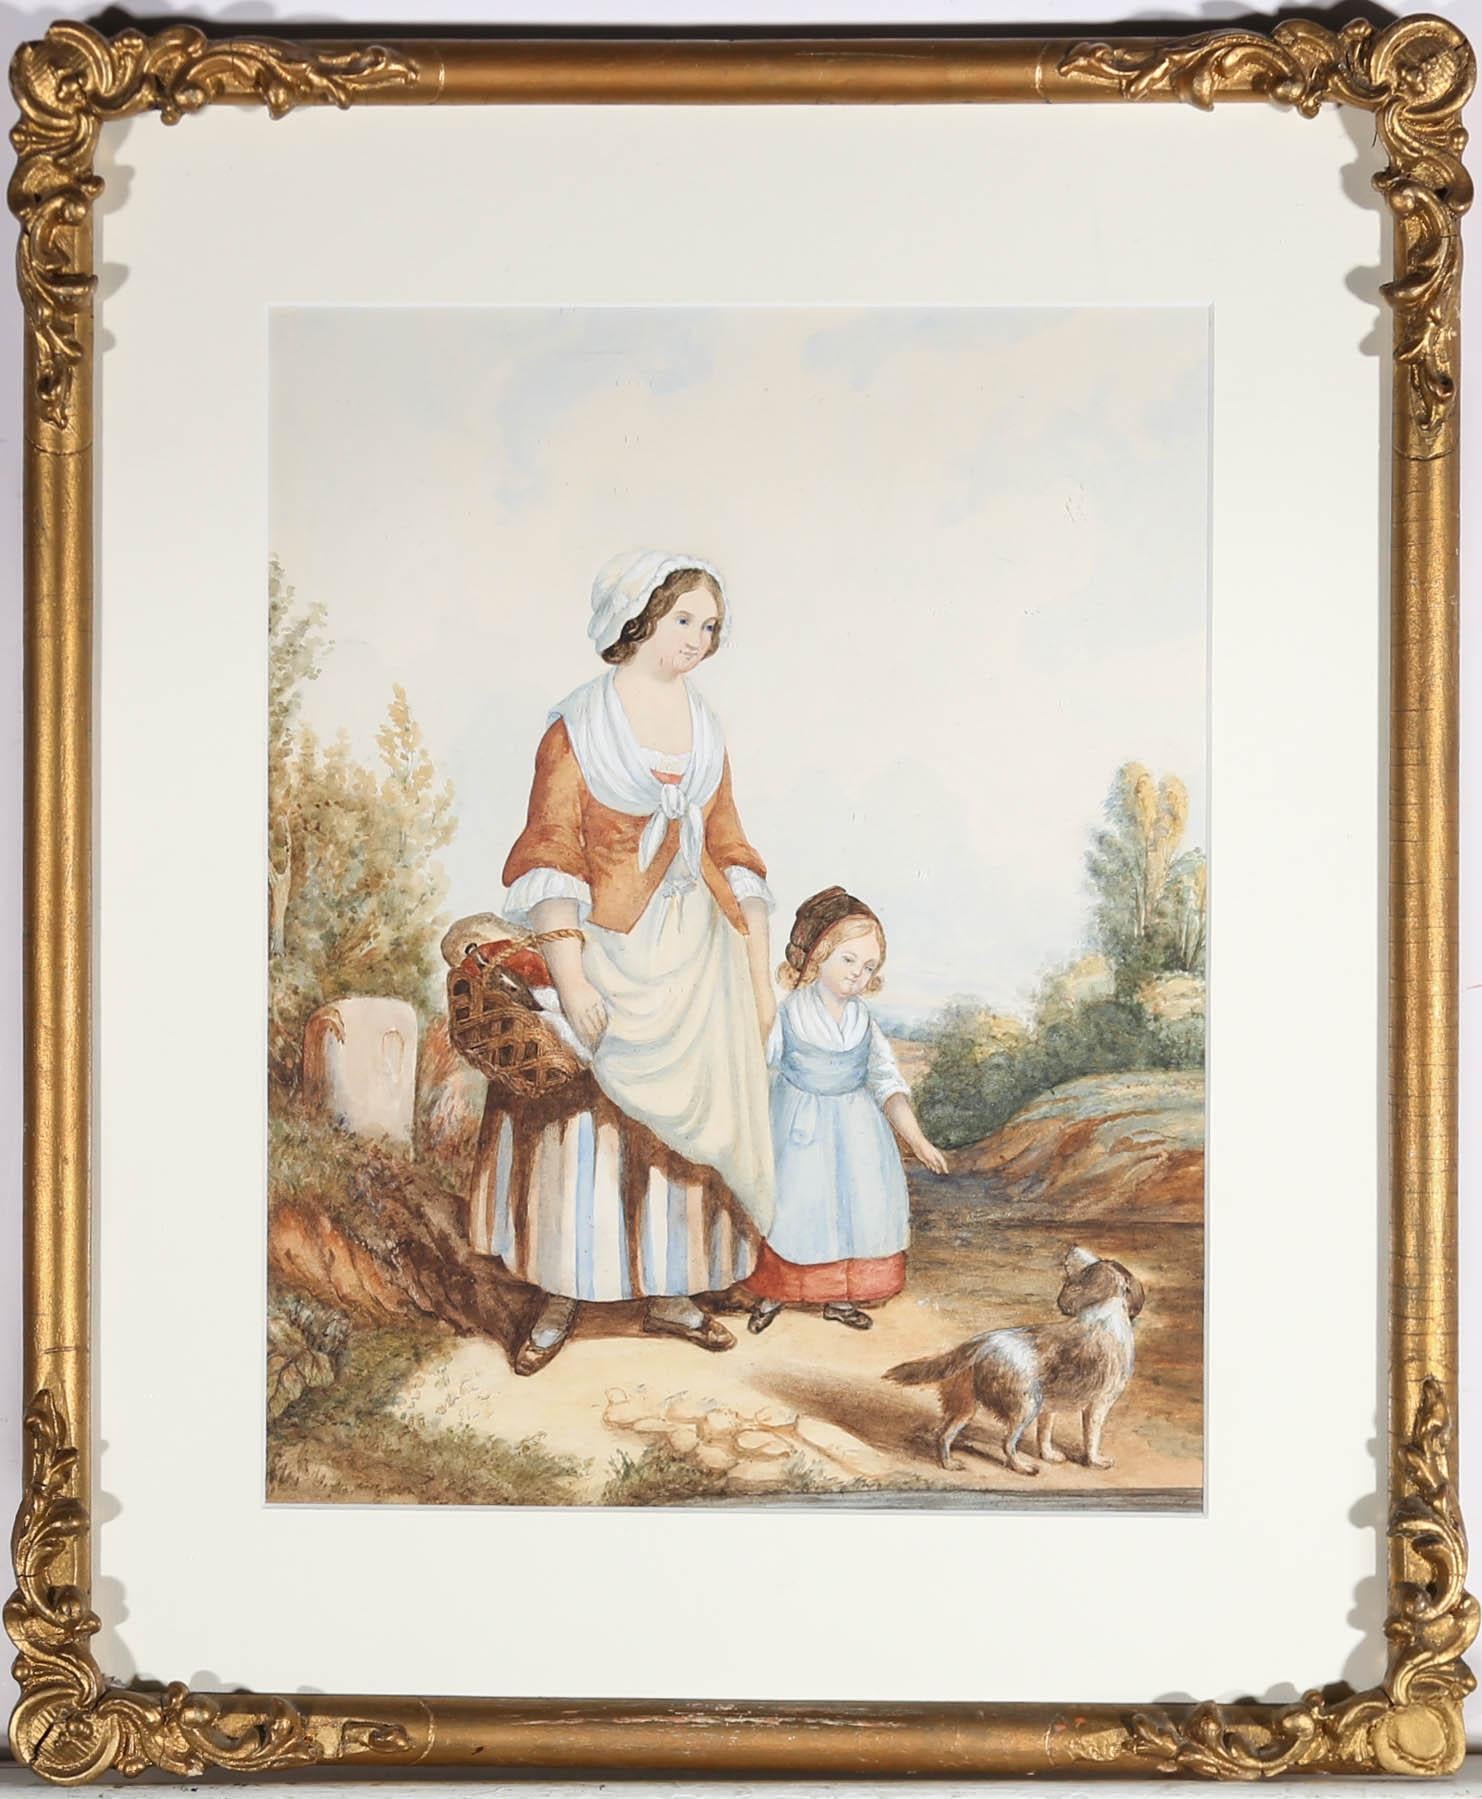 Cette délicieuse étude à l'aquarelle représente une mère et sa fille, main dans la main, sur un chemin de campagne. Les deux personnages regardent le petit chien qui se trouve devant eux, tandis que l'enfant lui tend doucement la main. Peint avec de